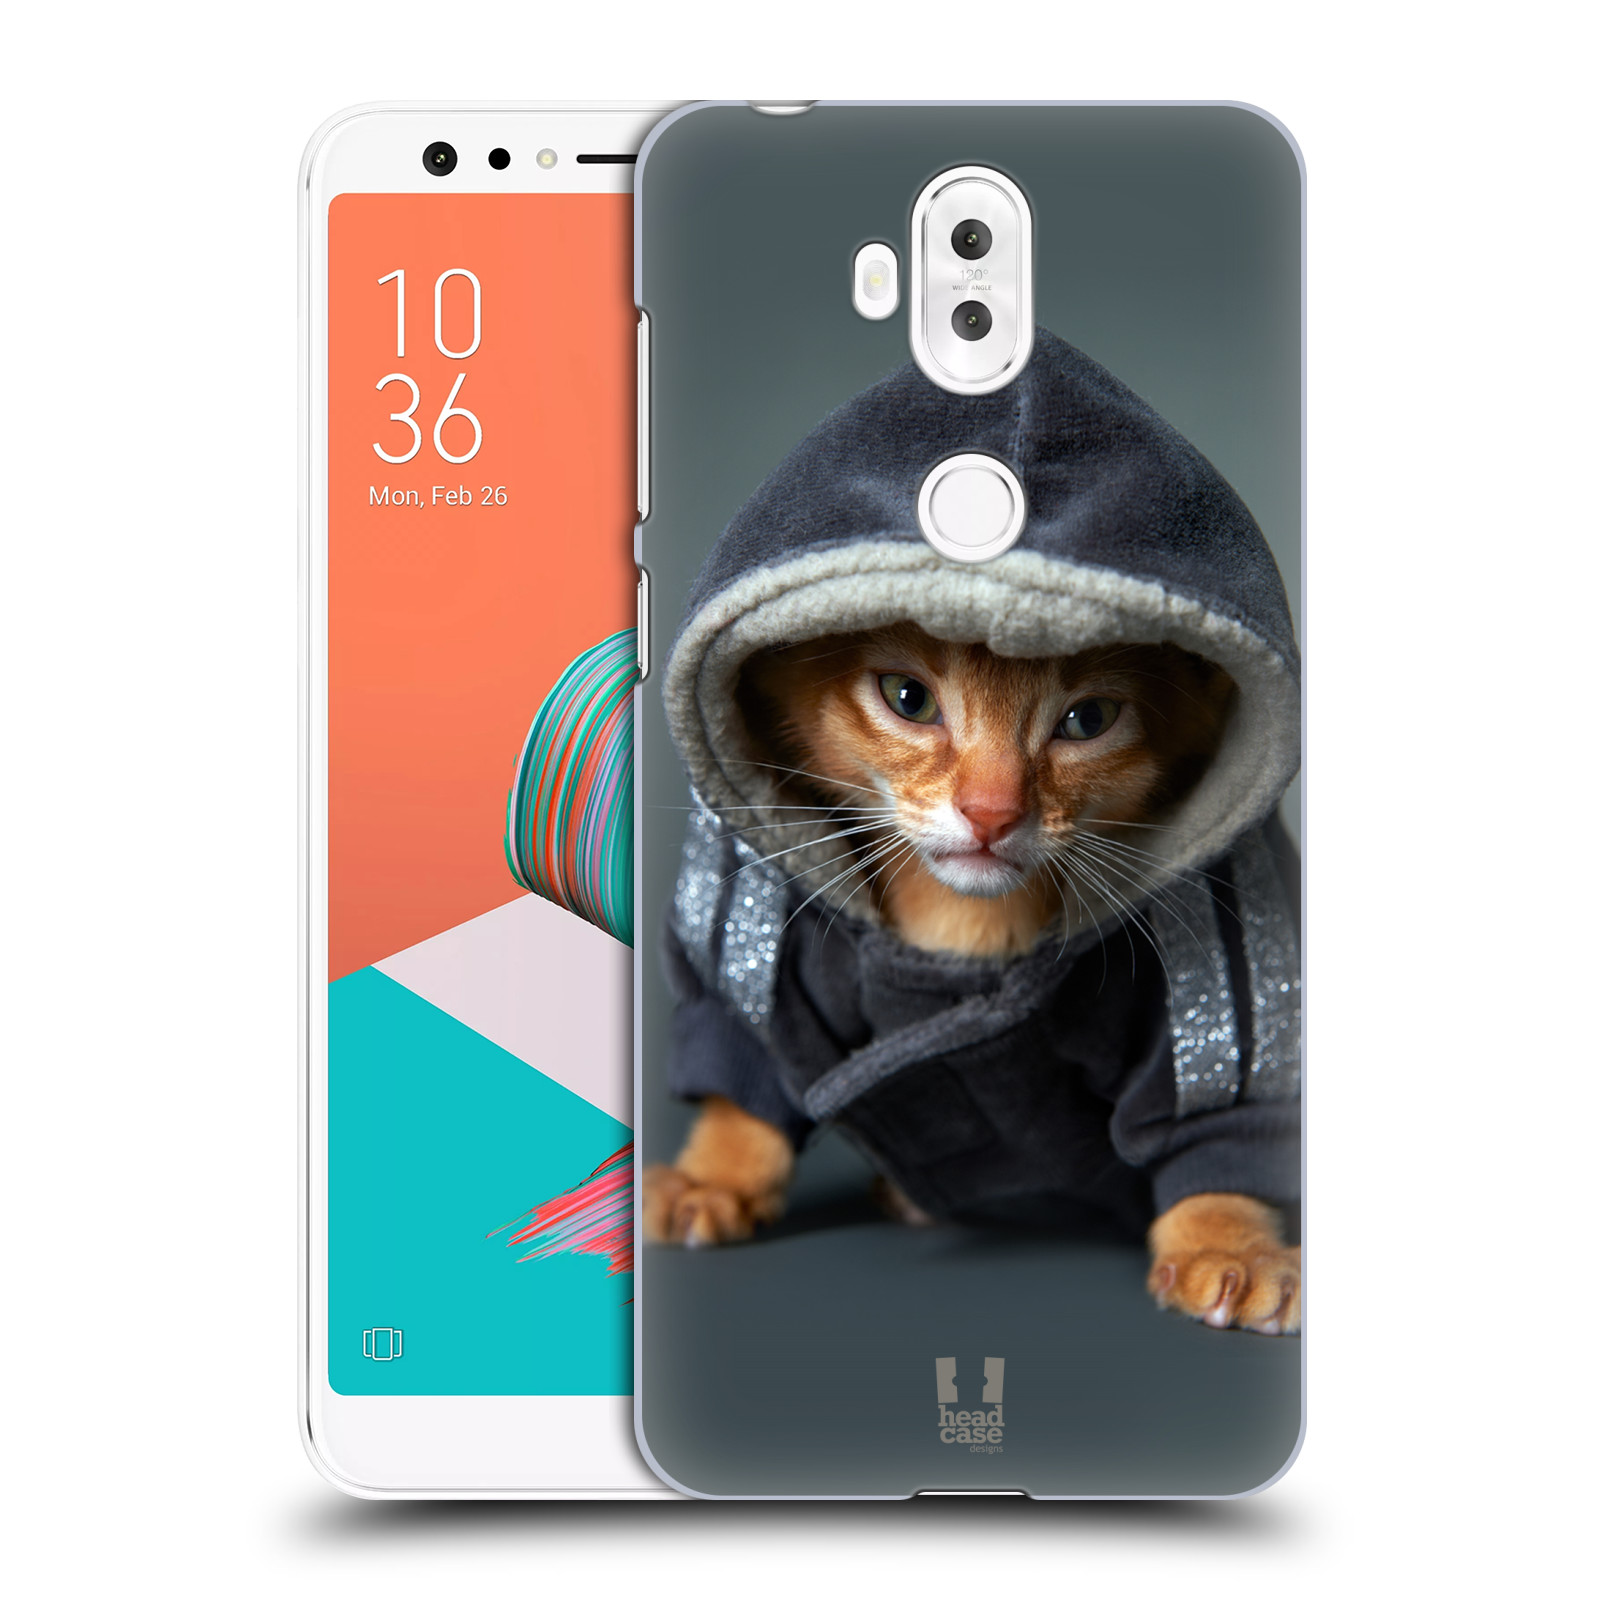 HEAD CASE plastový obal na mobil Asus Zenfone 5 LITE ZC600KL vzor Legrační zvířátka kotě/kočička s kapucí